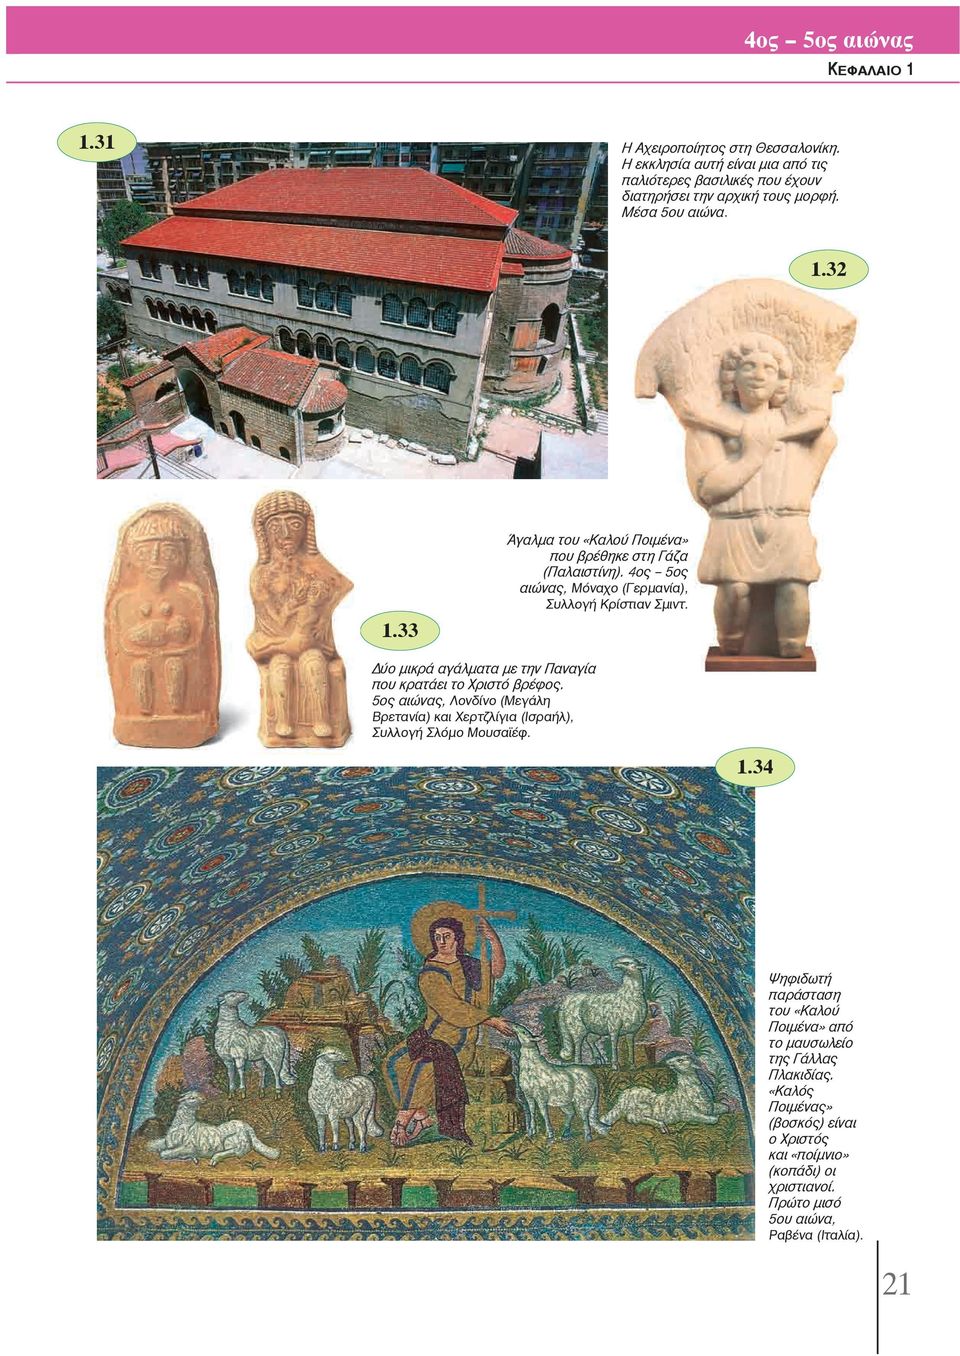 33 Δύο μικρά αγάλματα με την Παναγία που κρατάει το Χριστό βρέφος. 5ος αιώνας, Λονδίνο (Μεγάλη Βρετανία) και Χερτζλίγια (Ισραήλ), Συλλογή Σλόμο Μουϊέφ. 1.